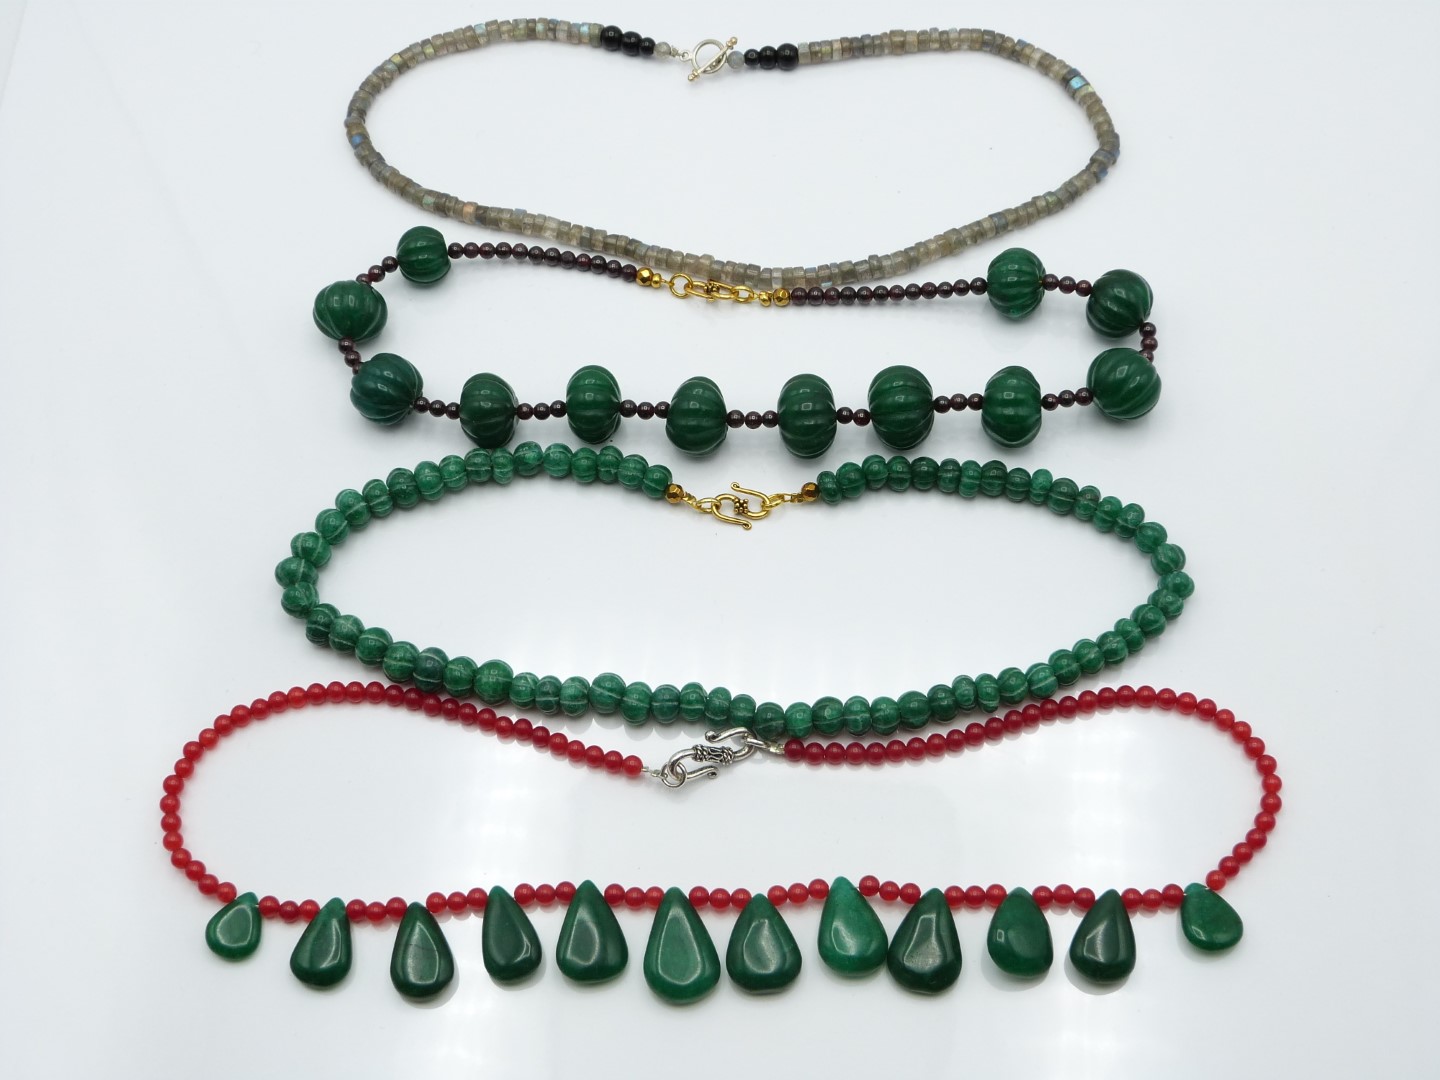 A labradorite necklace, jade and quartz necklace, garnet and quartz and another quartz necklace